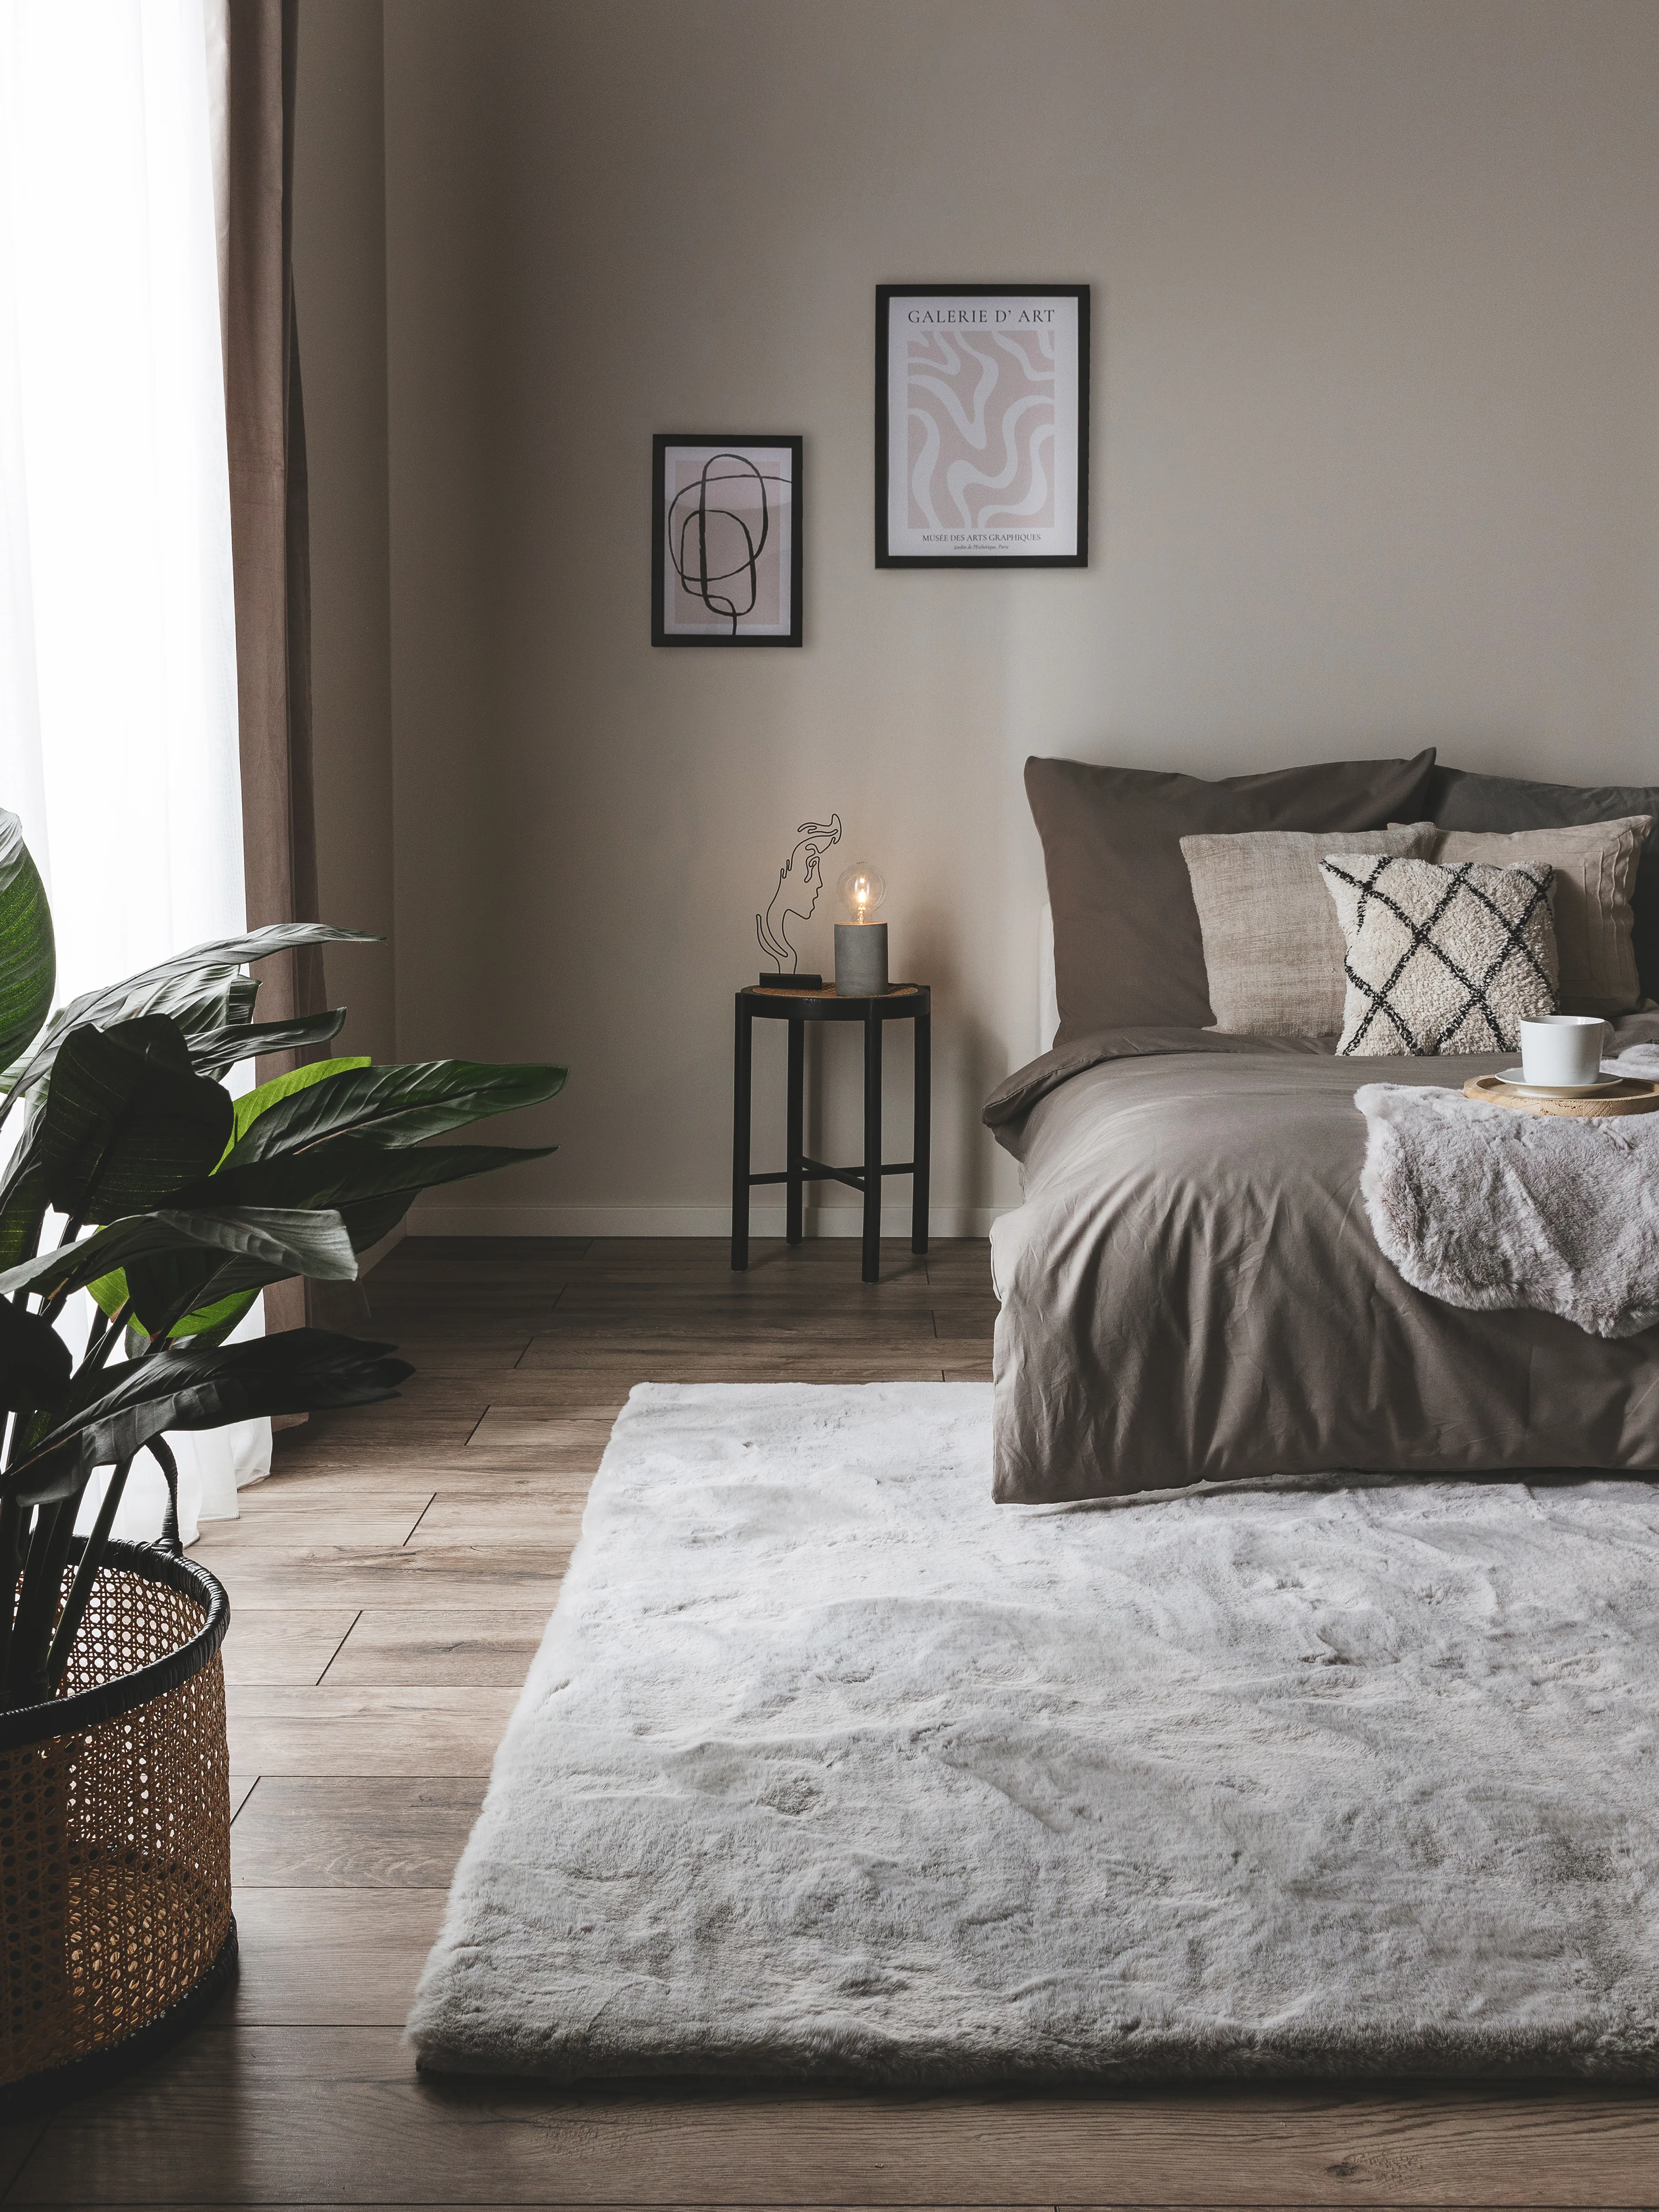 Dunkel eingerichtetes Gästezimmer mit grauer Bettwäsche, grauem Hochflorteppich als Bettvorleger und grau gestrichener Wand